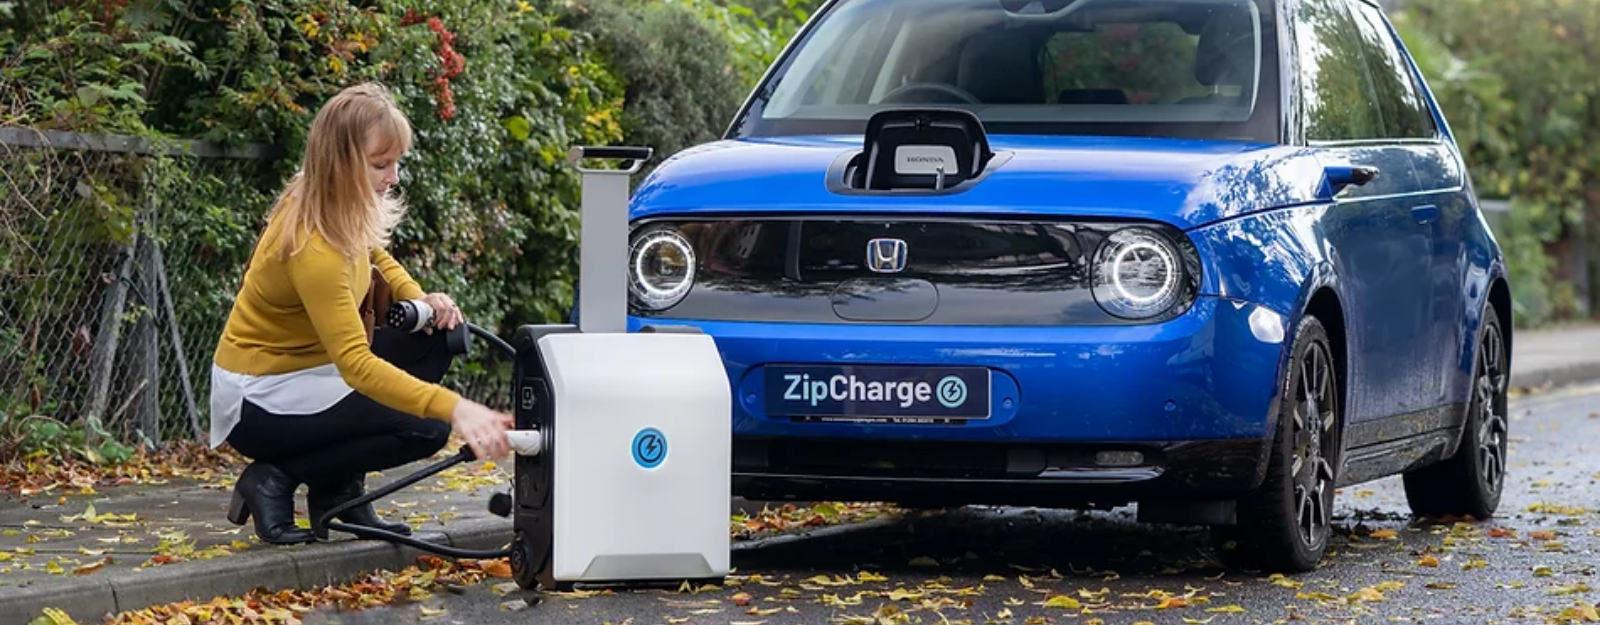 Voitures électriques : une batterie portable pour recharger votre véhicule.